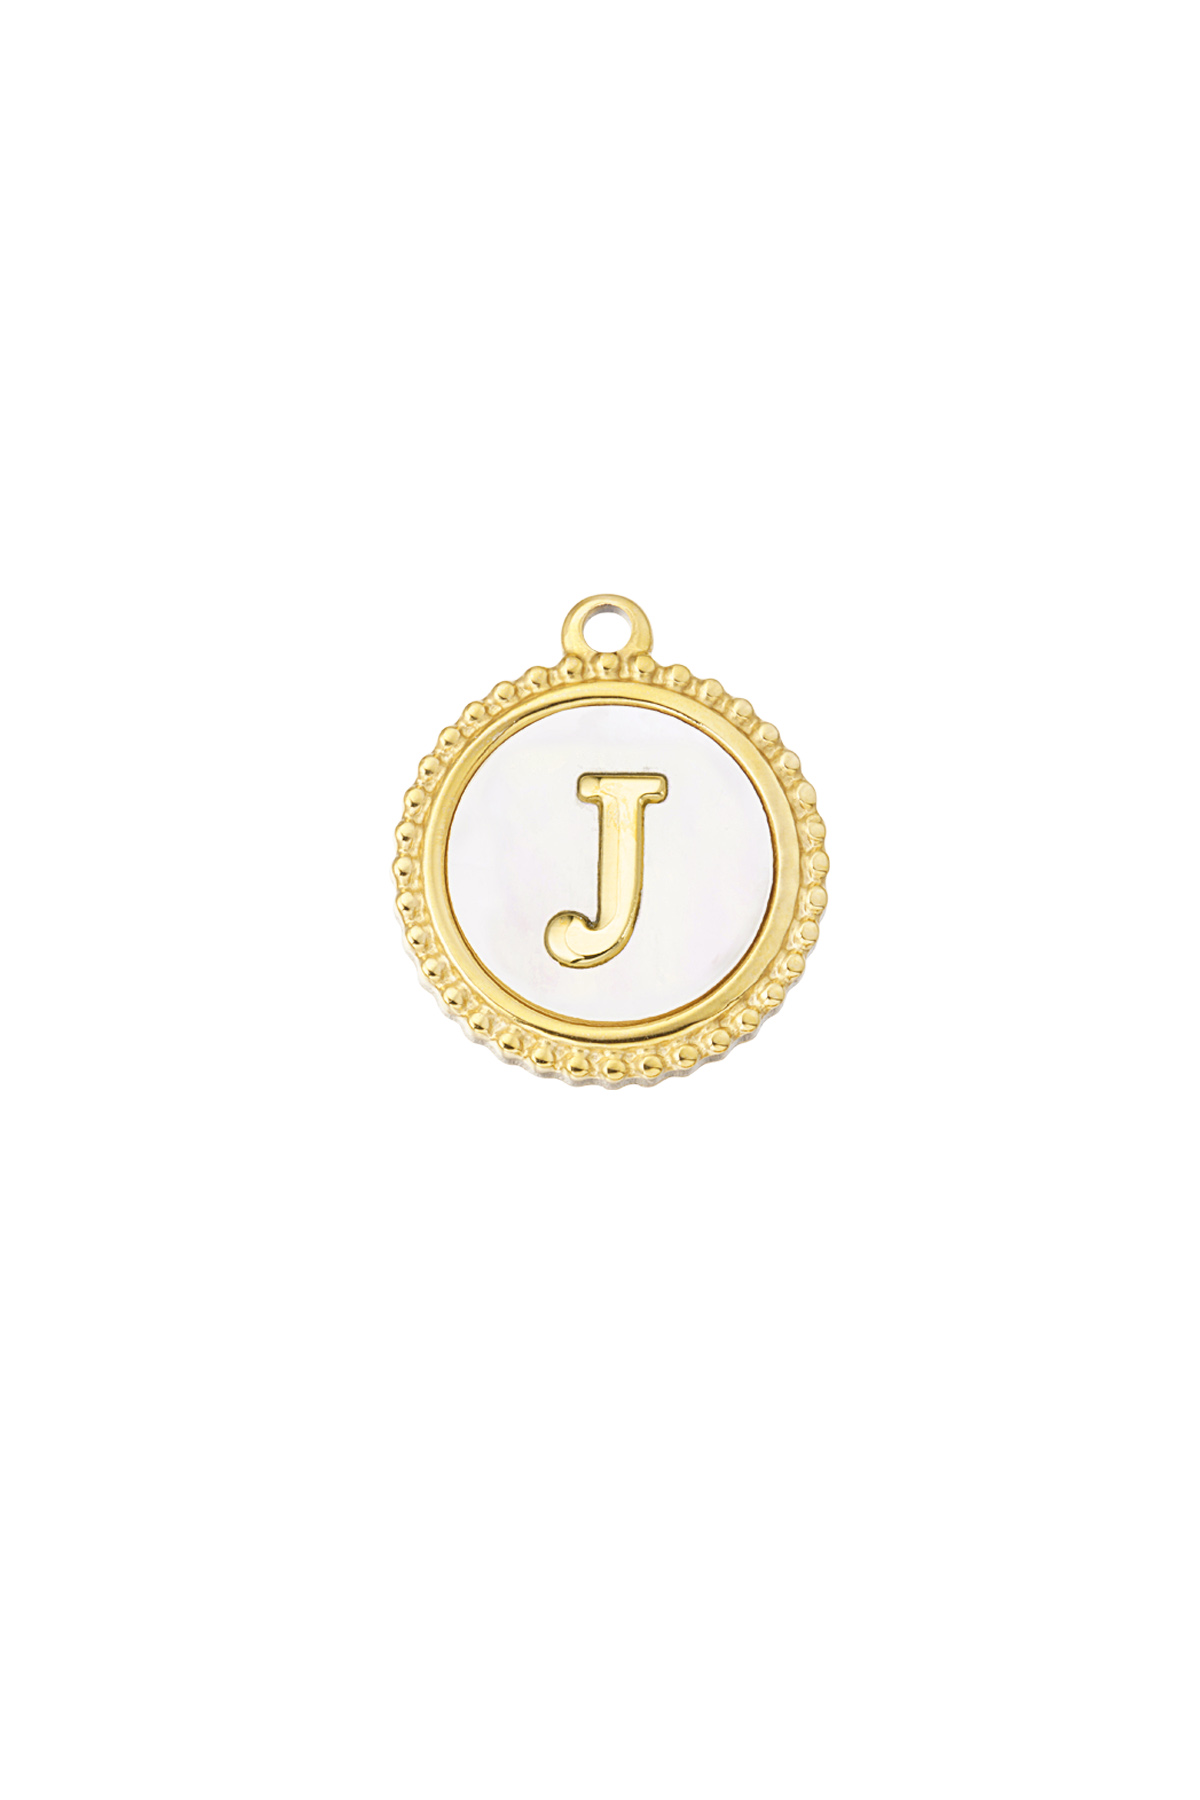 Oro / Charm elegante J - dorado/blanco Imagen25